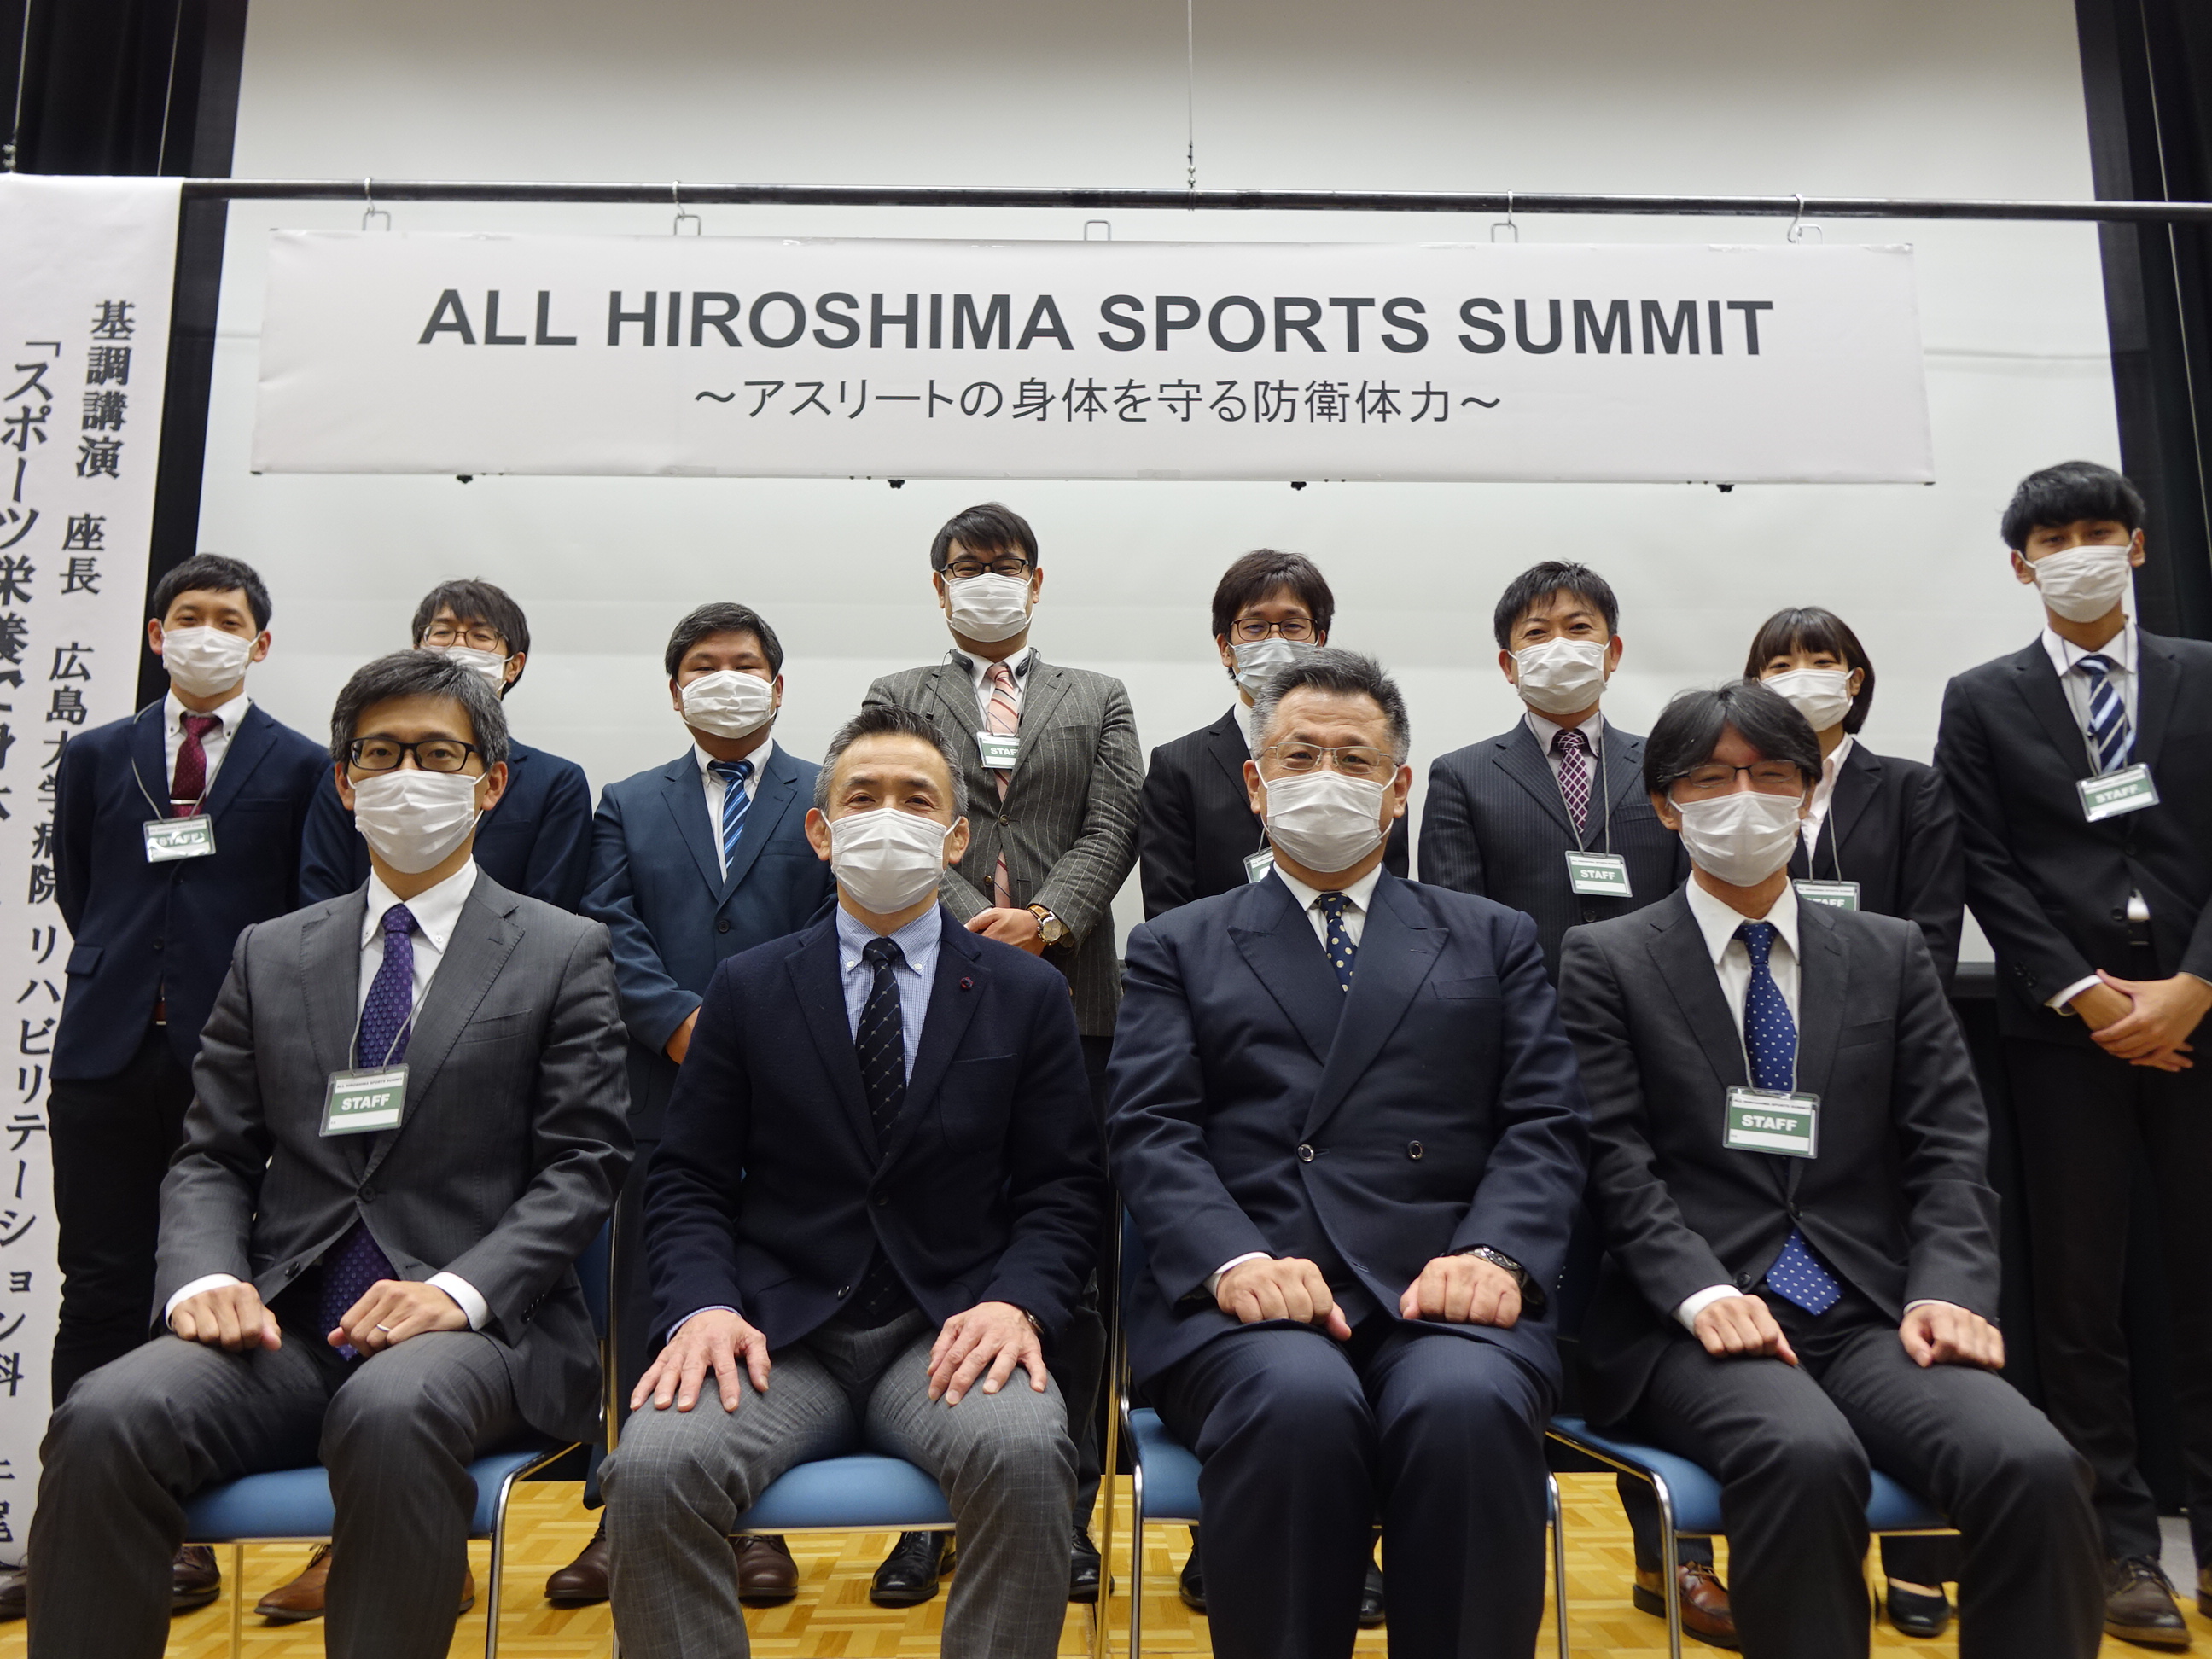 ALL HIROSHIMA SPORTS SUMMIT 2020 ～アスリートの身体を守る防衛体力～を開催いたしました